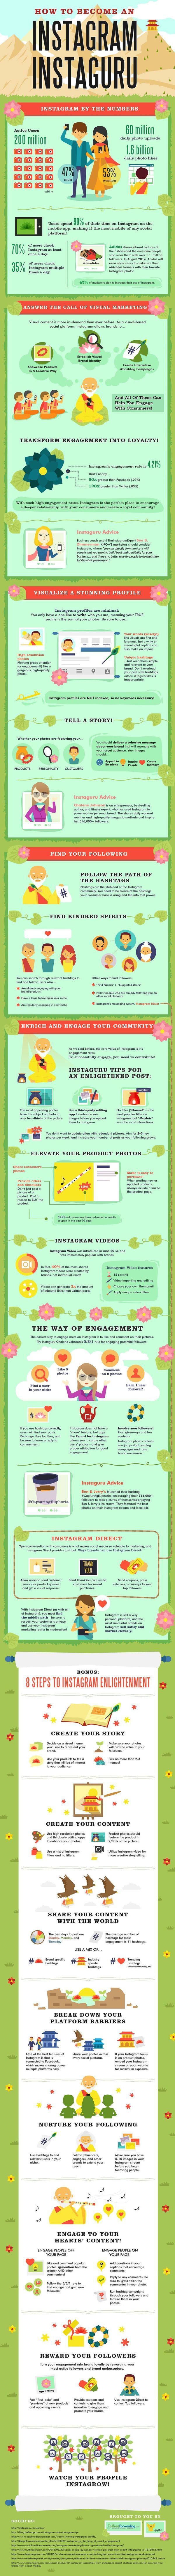 Original content wersm instagram instaguru infographic